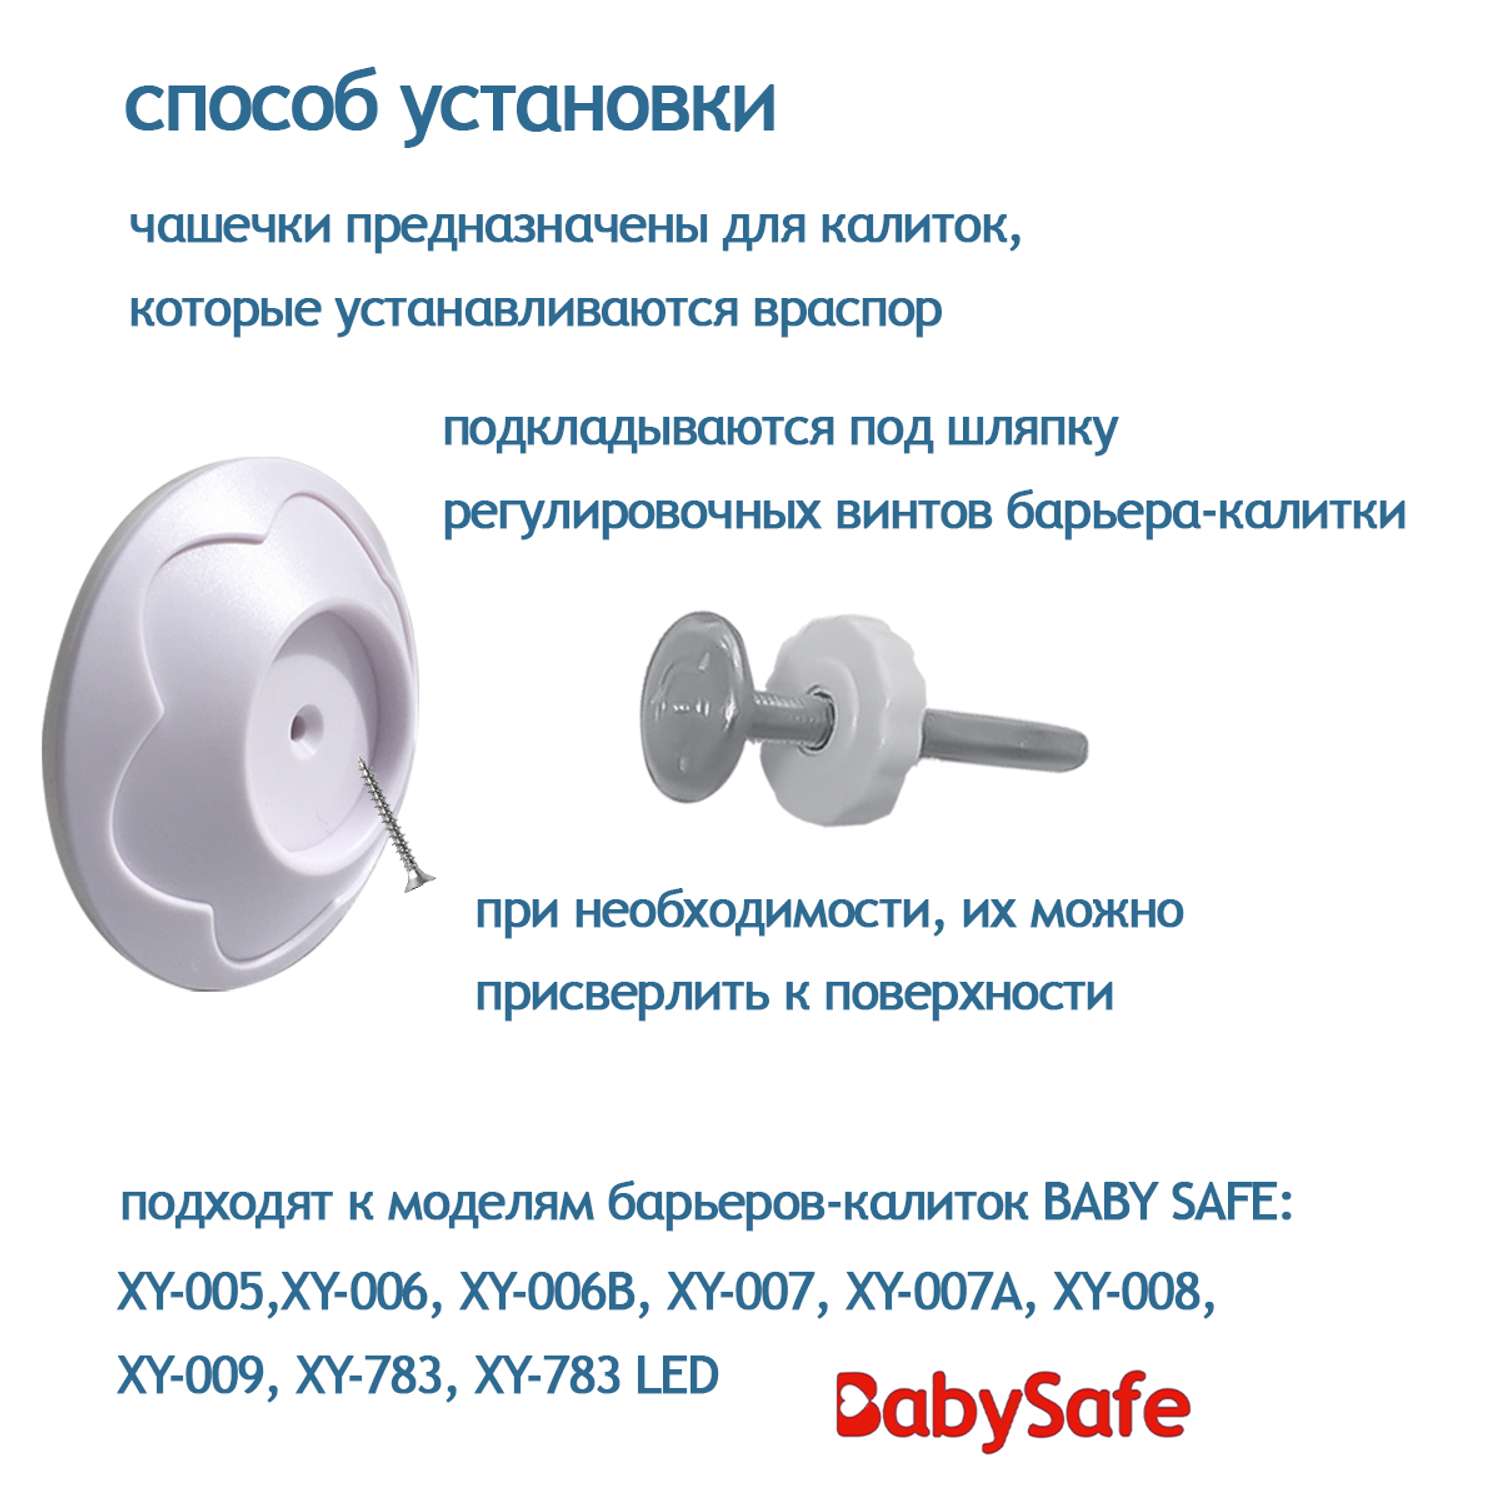 Чашечки настенные Baby Safe для установки барьера-калитки 2 шт - фото 2